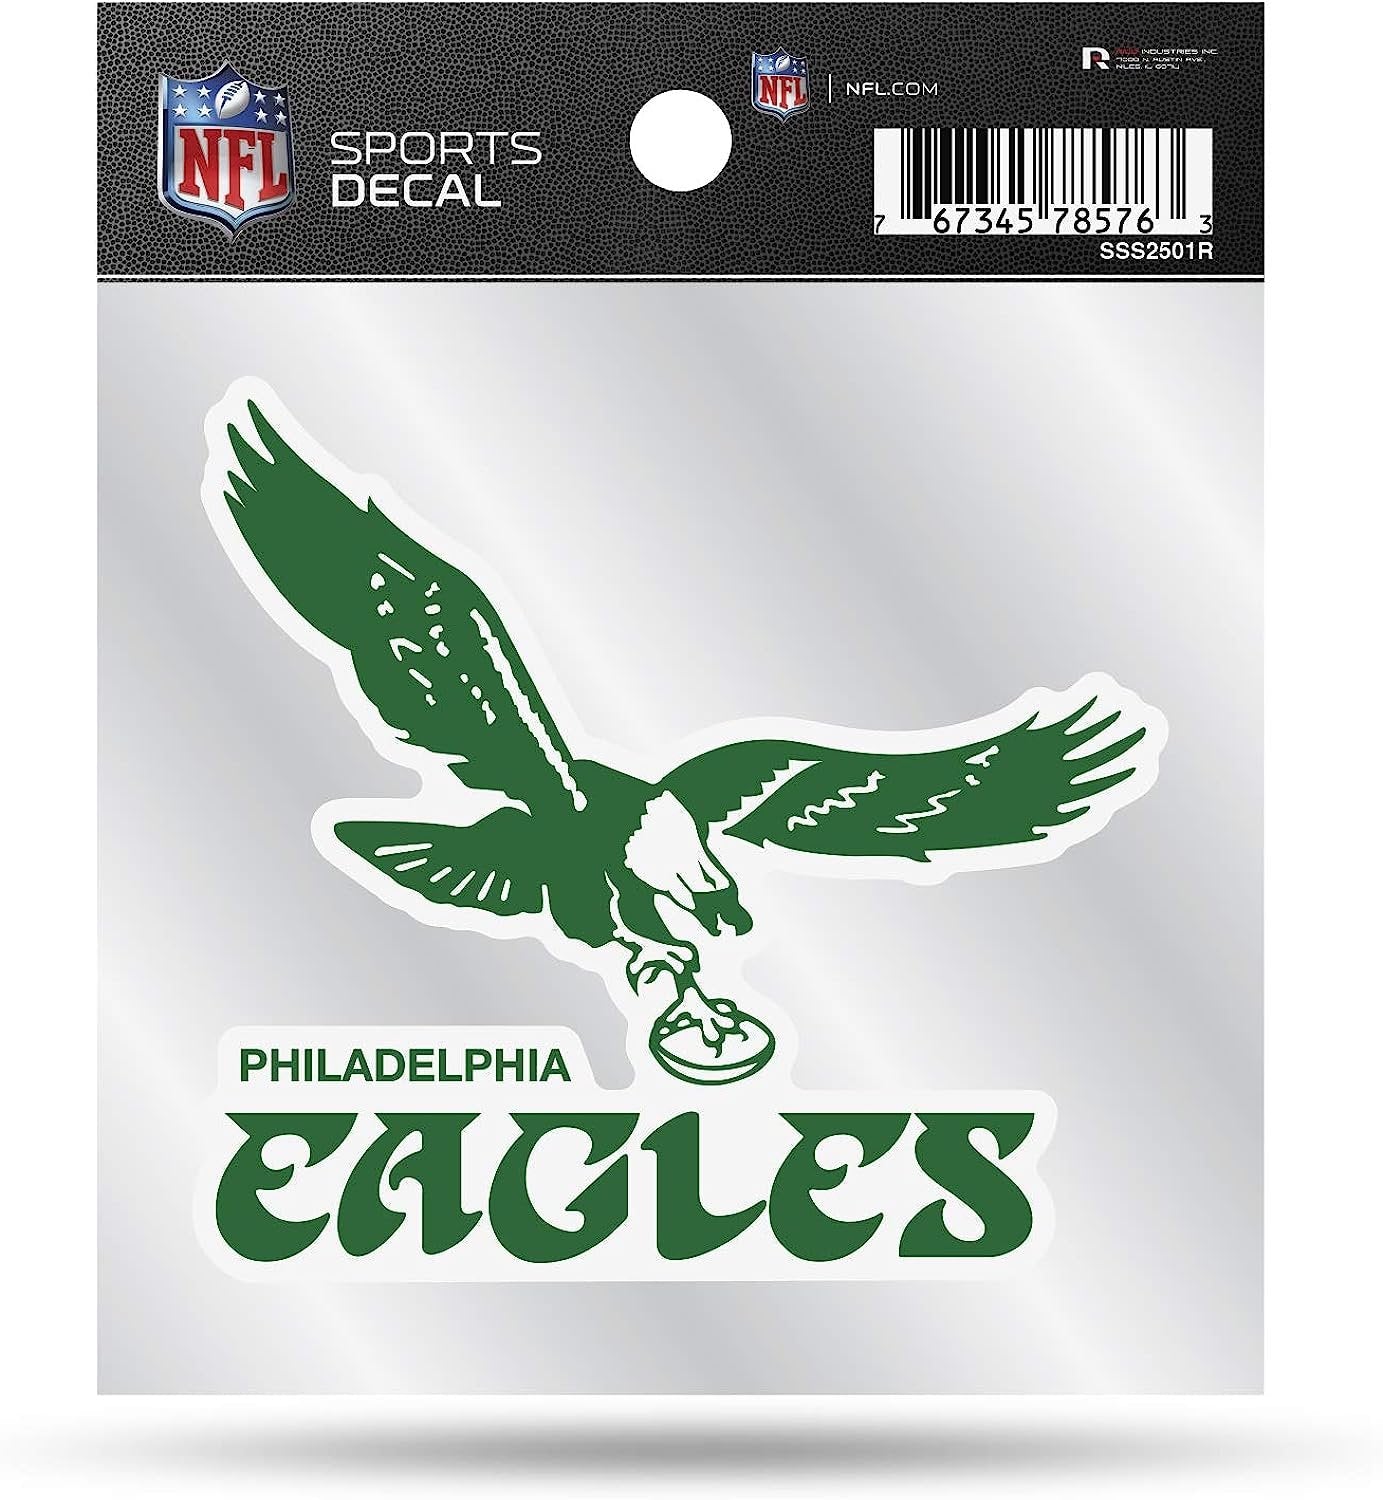 Philadelphia Eagles 4x4 Inch Die Cut Decal Sticker, Retro Logo, Clear Backing